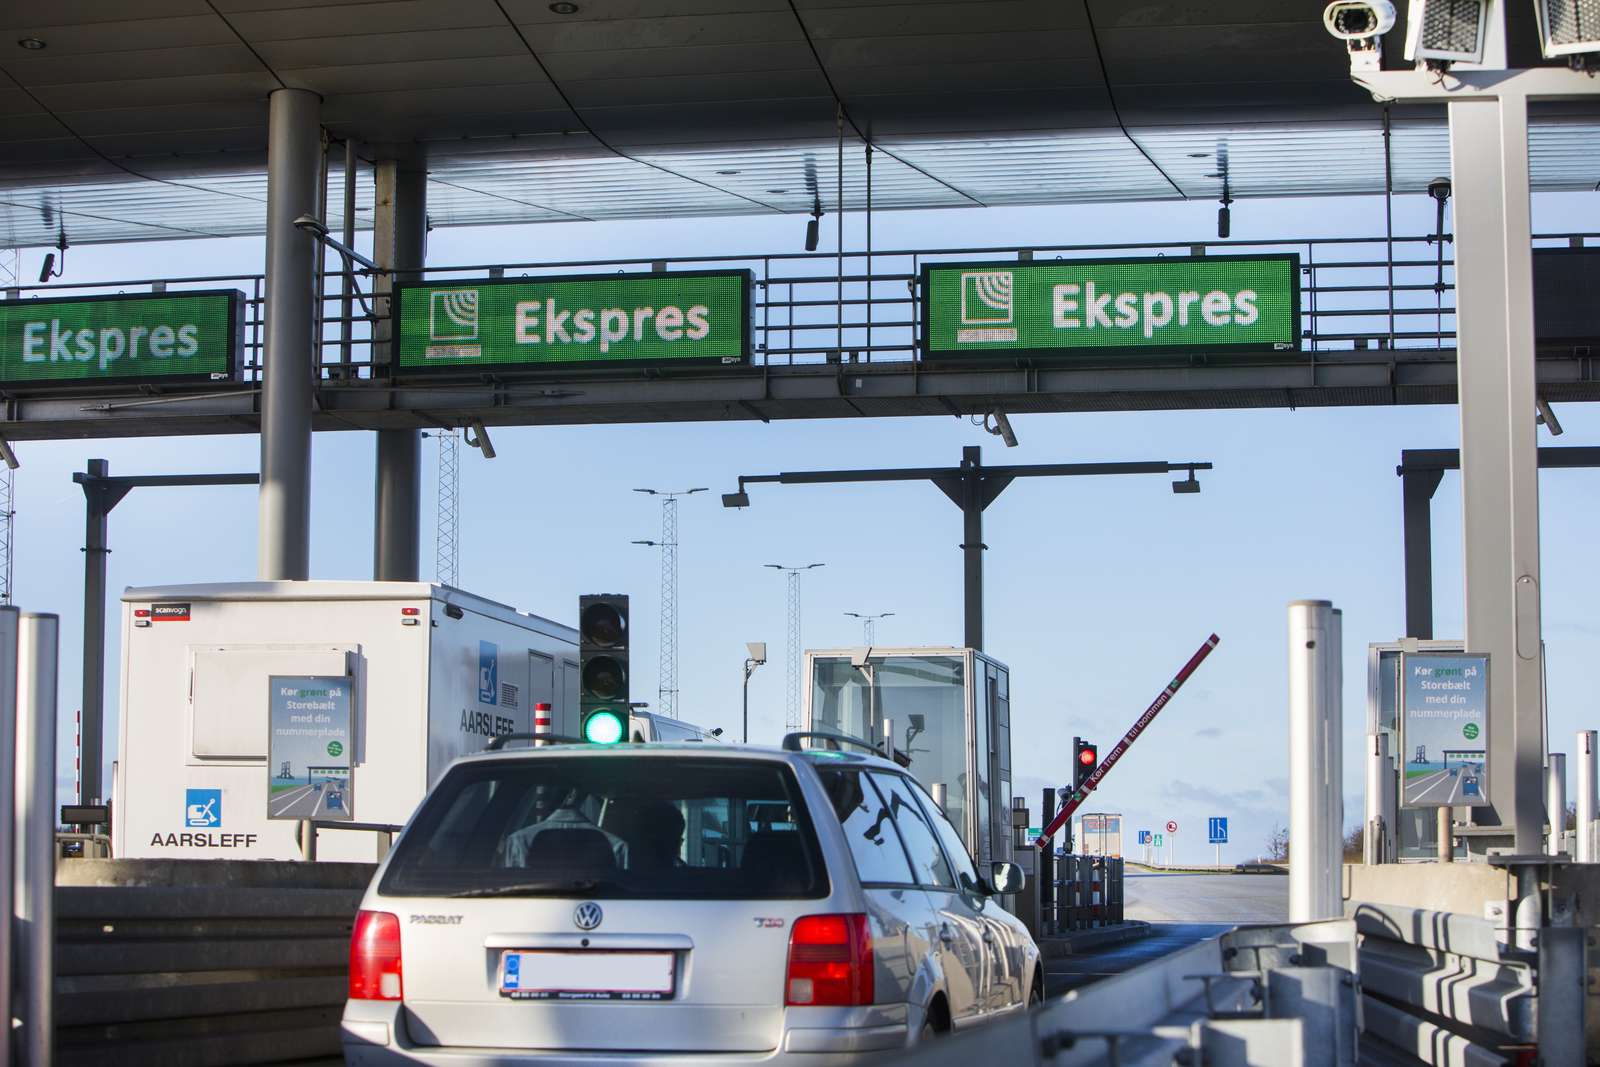 Storebælt toll station Express lane